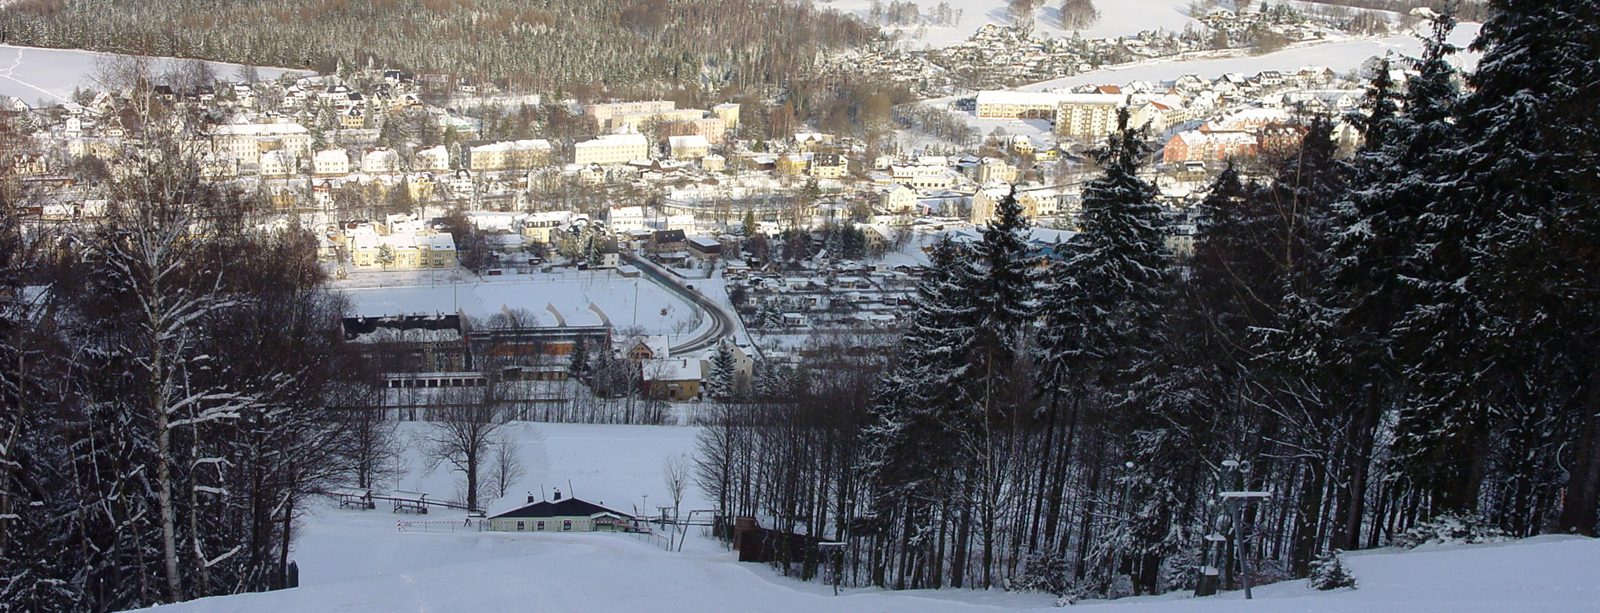 Skilift in Olbernhau